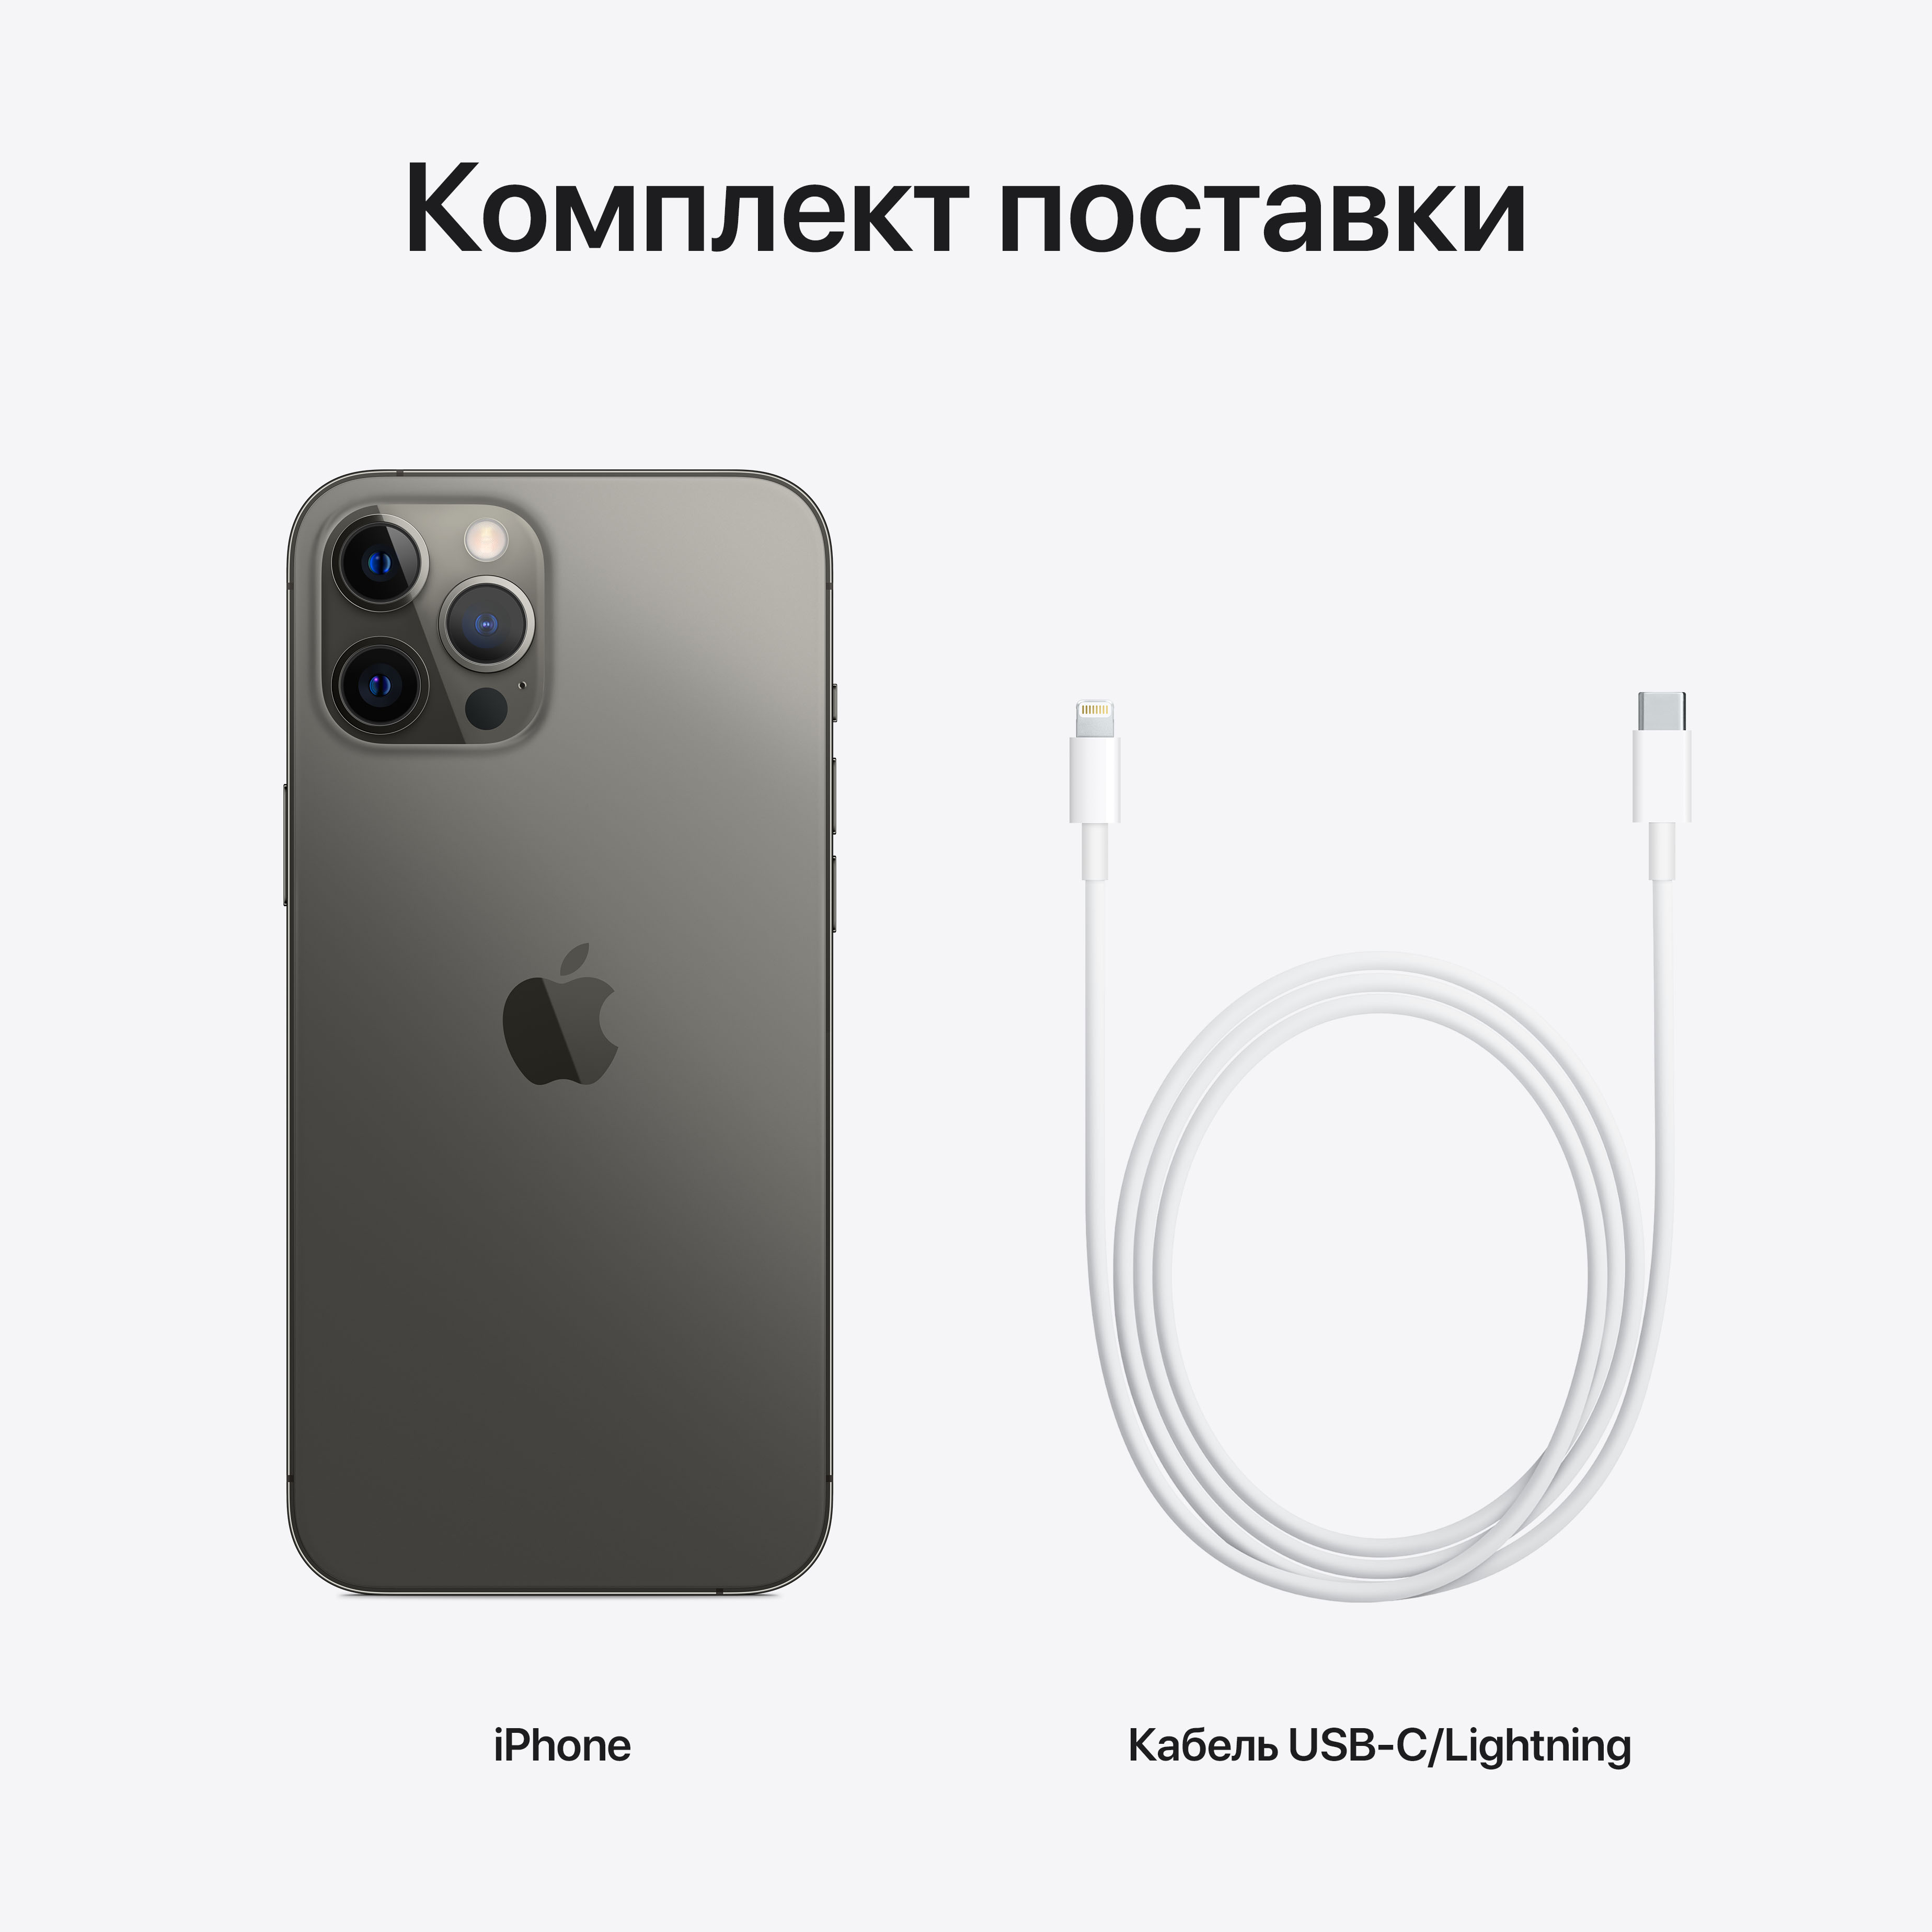 Фото — Apple iPhone 12 Pro, 128 ГБ, графитовый